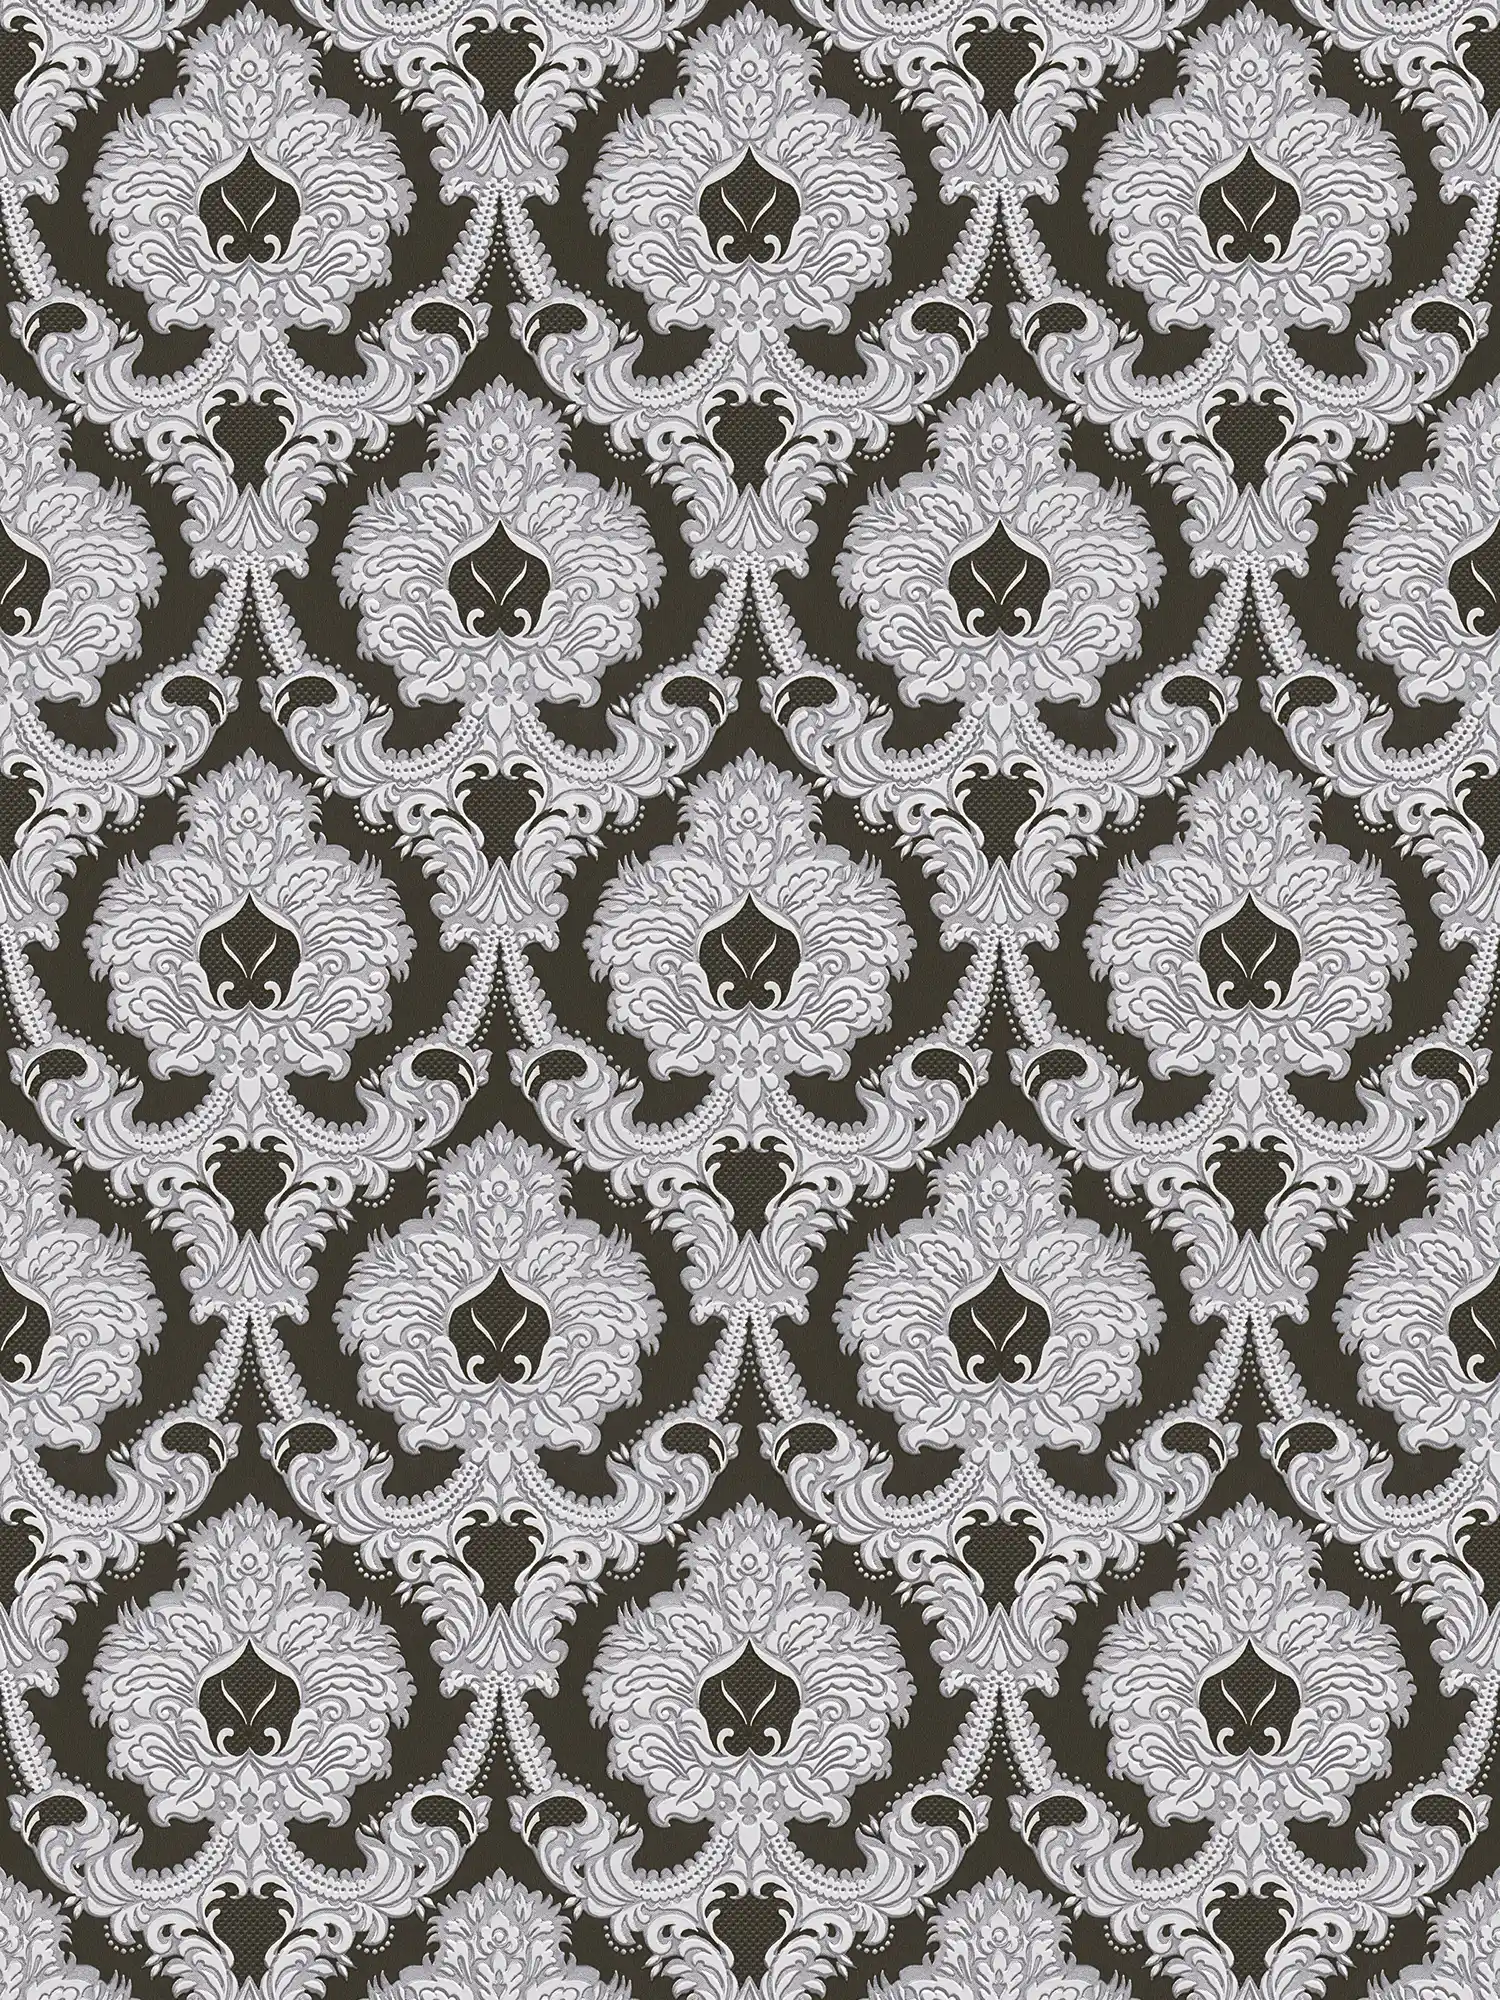 Opulent ornament wallpaper, silver accents - silver, black, white
